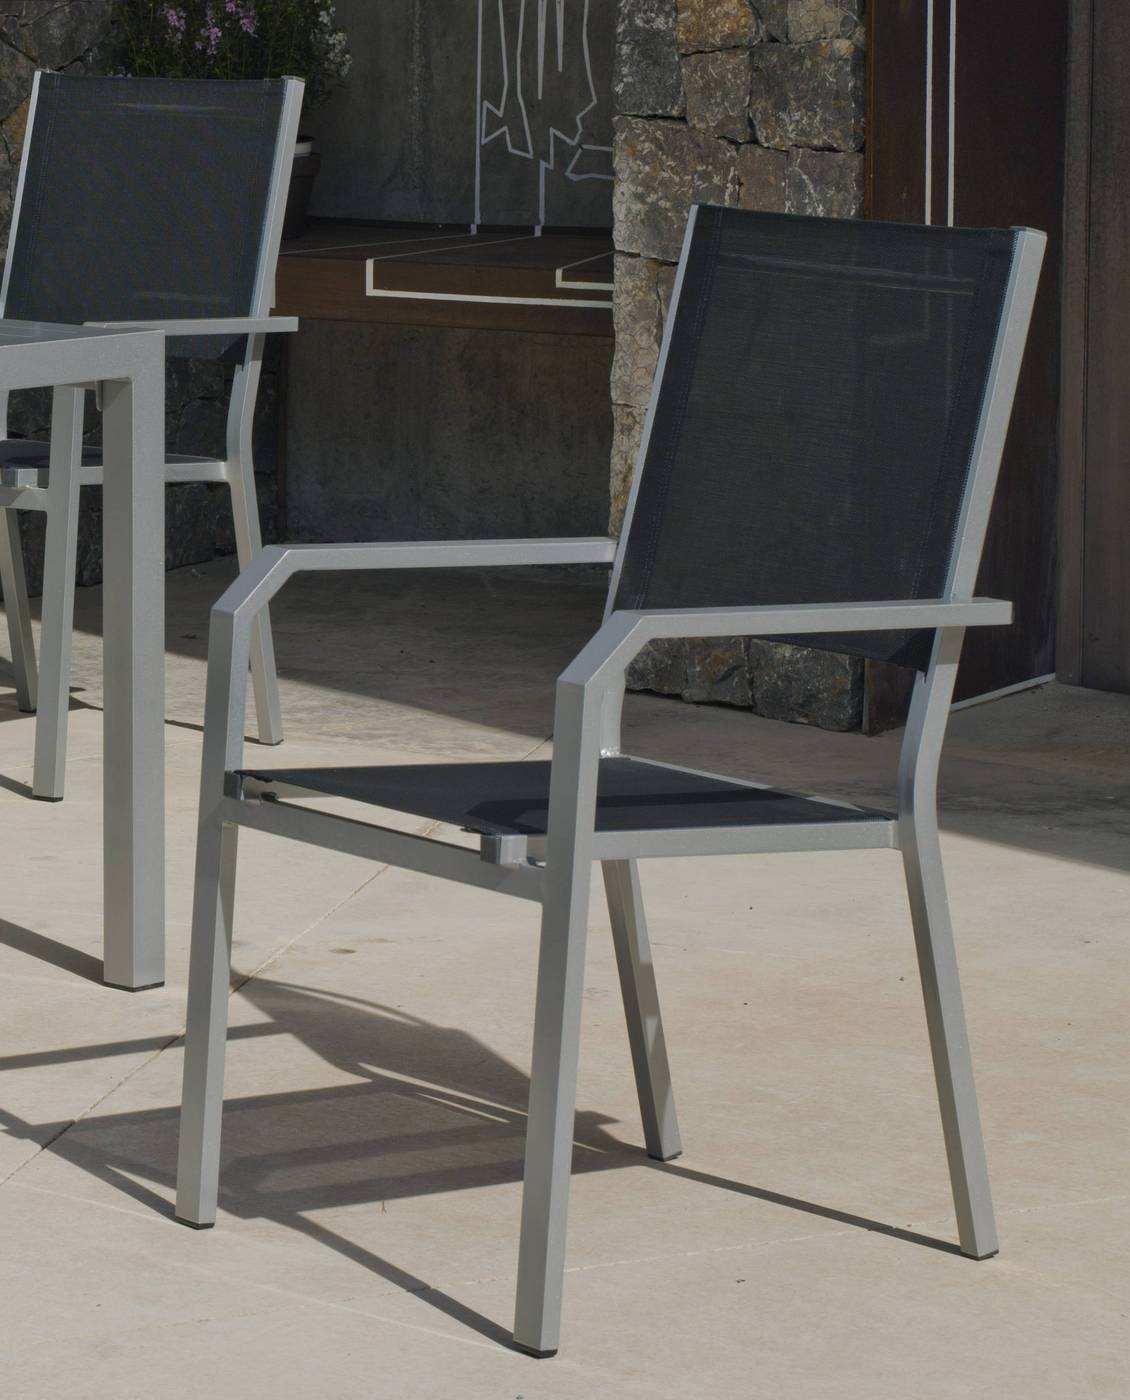 Set Aluminio Palma-Gema 150-6 - Conjunto aluminio luxe: Mesa rectangular 150 cm + 6 sillones de textilen. Disponible en color blanco, antracita, champagne, plata o marrón.